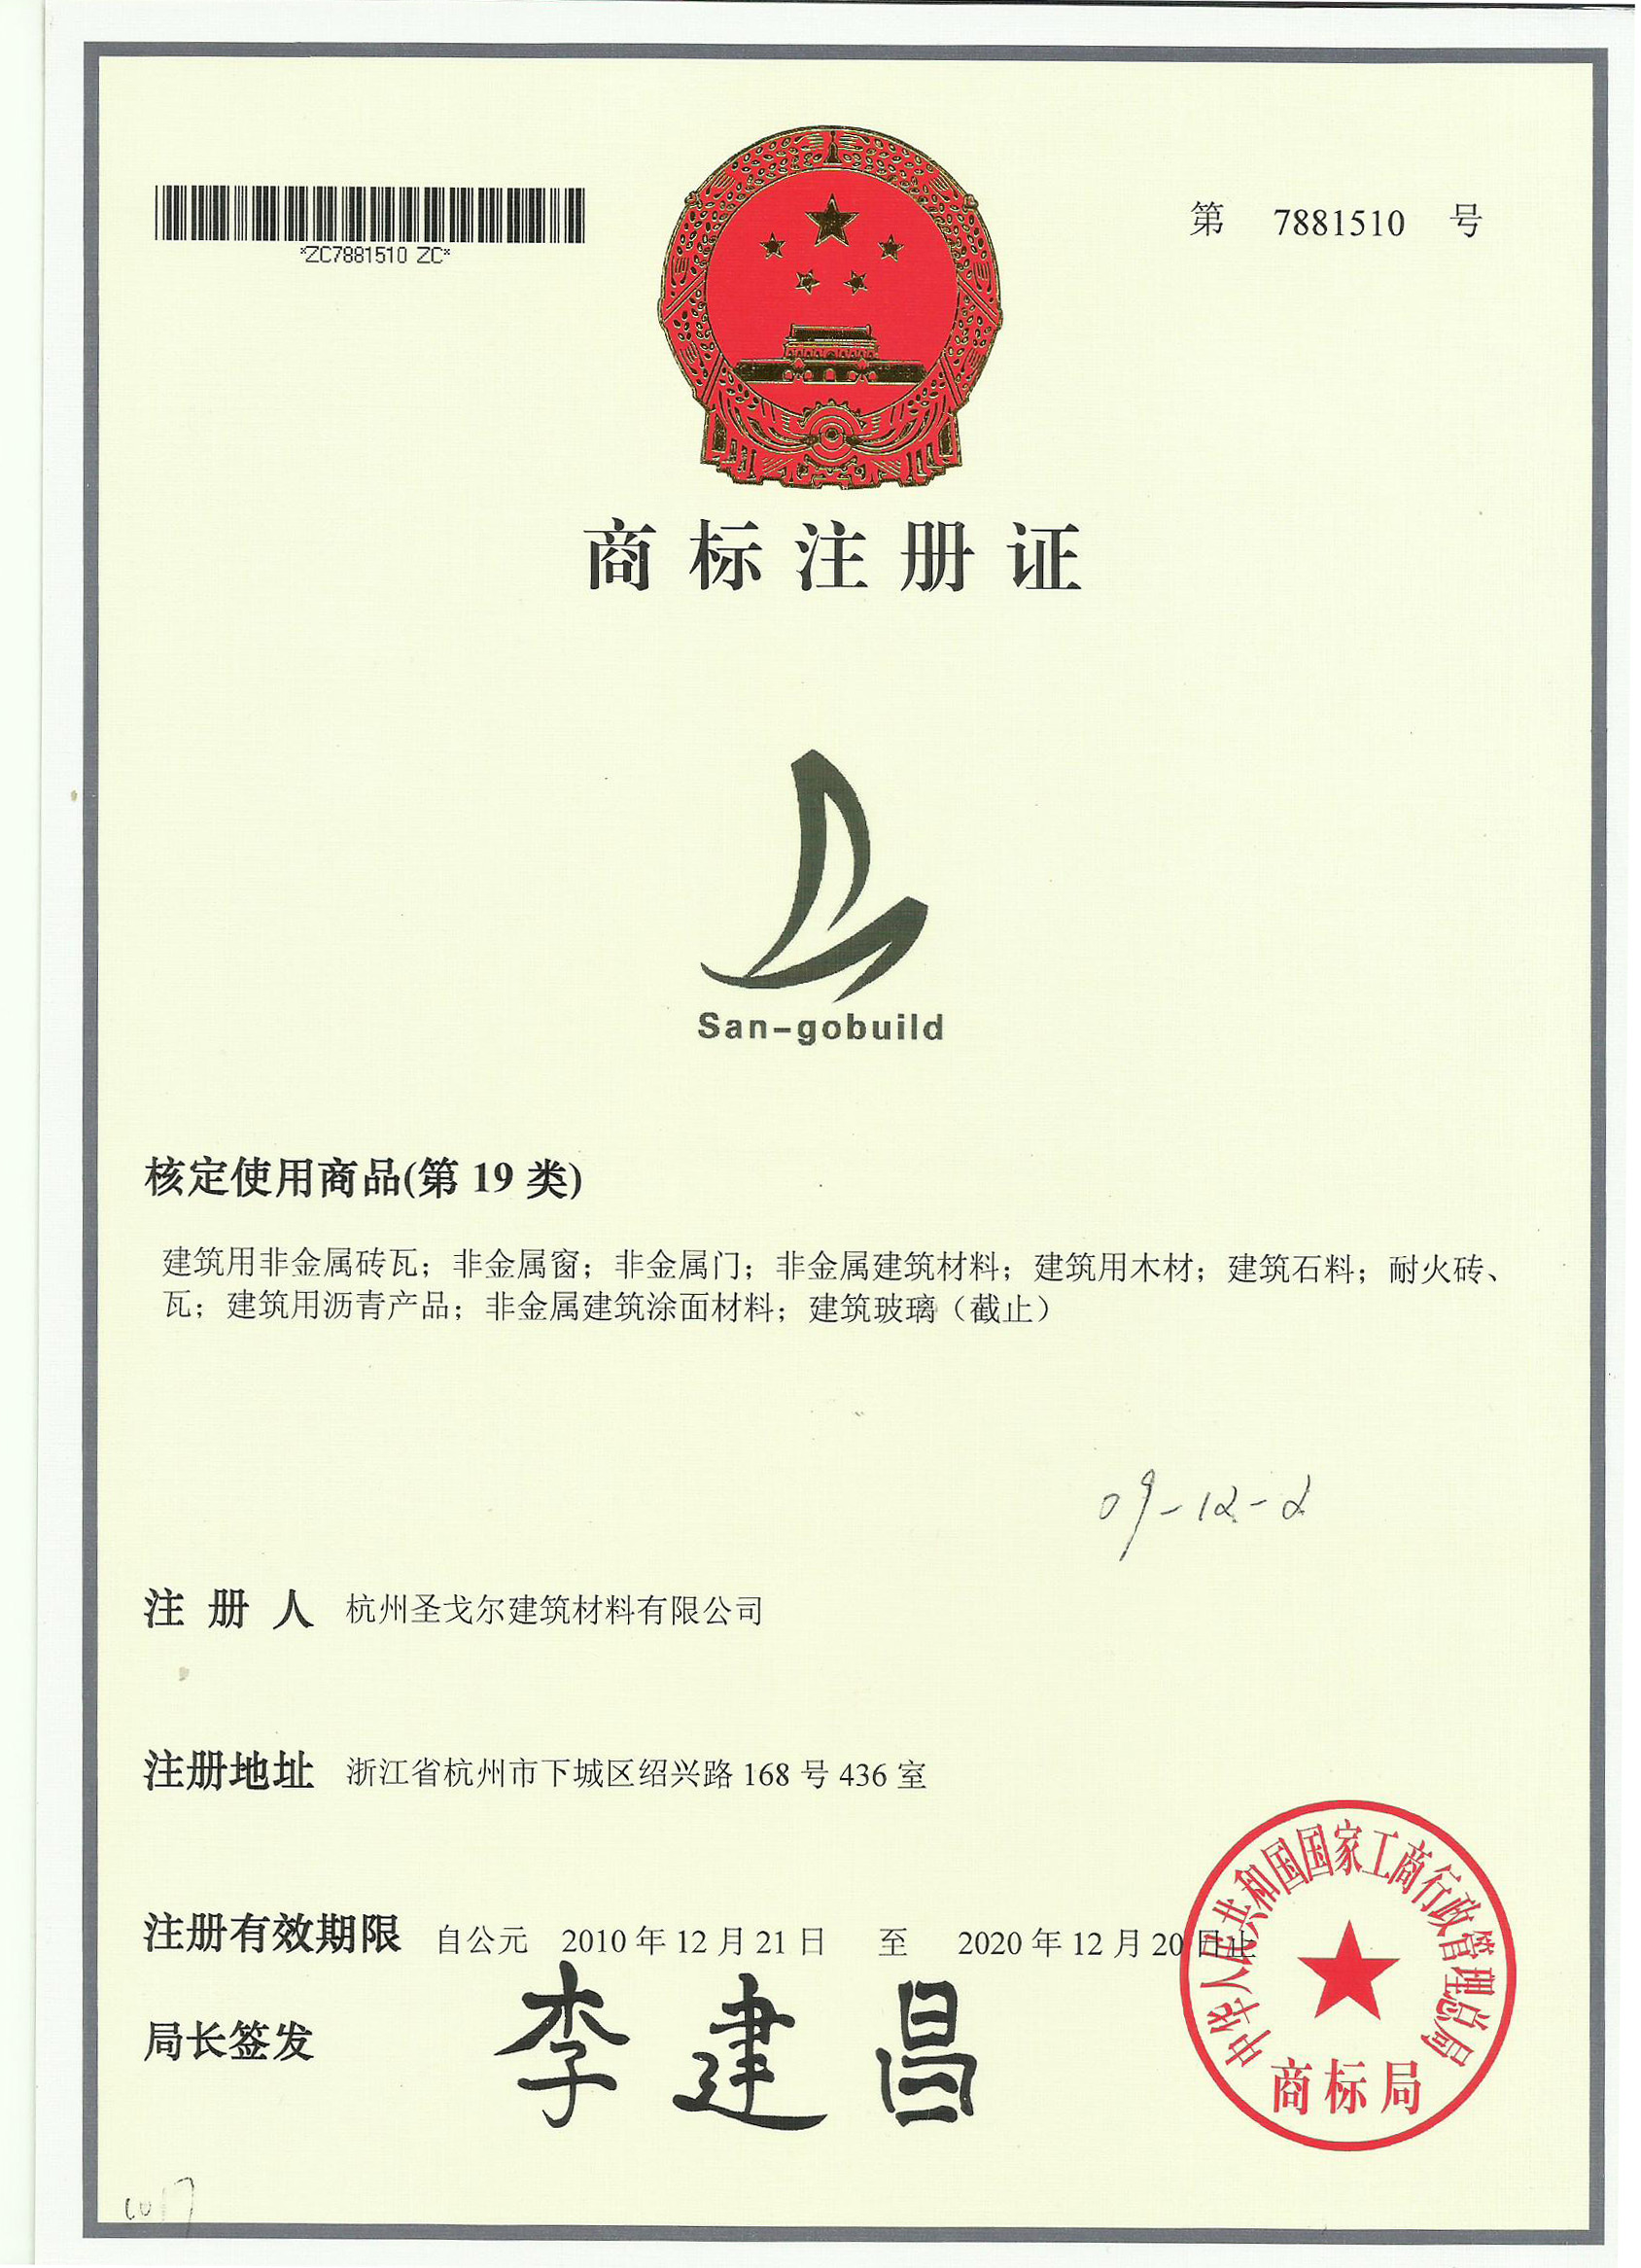 Trademark Registration Certification